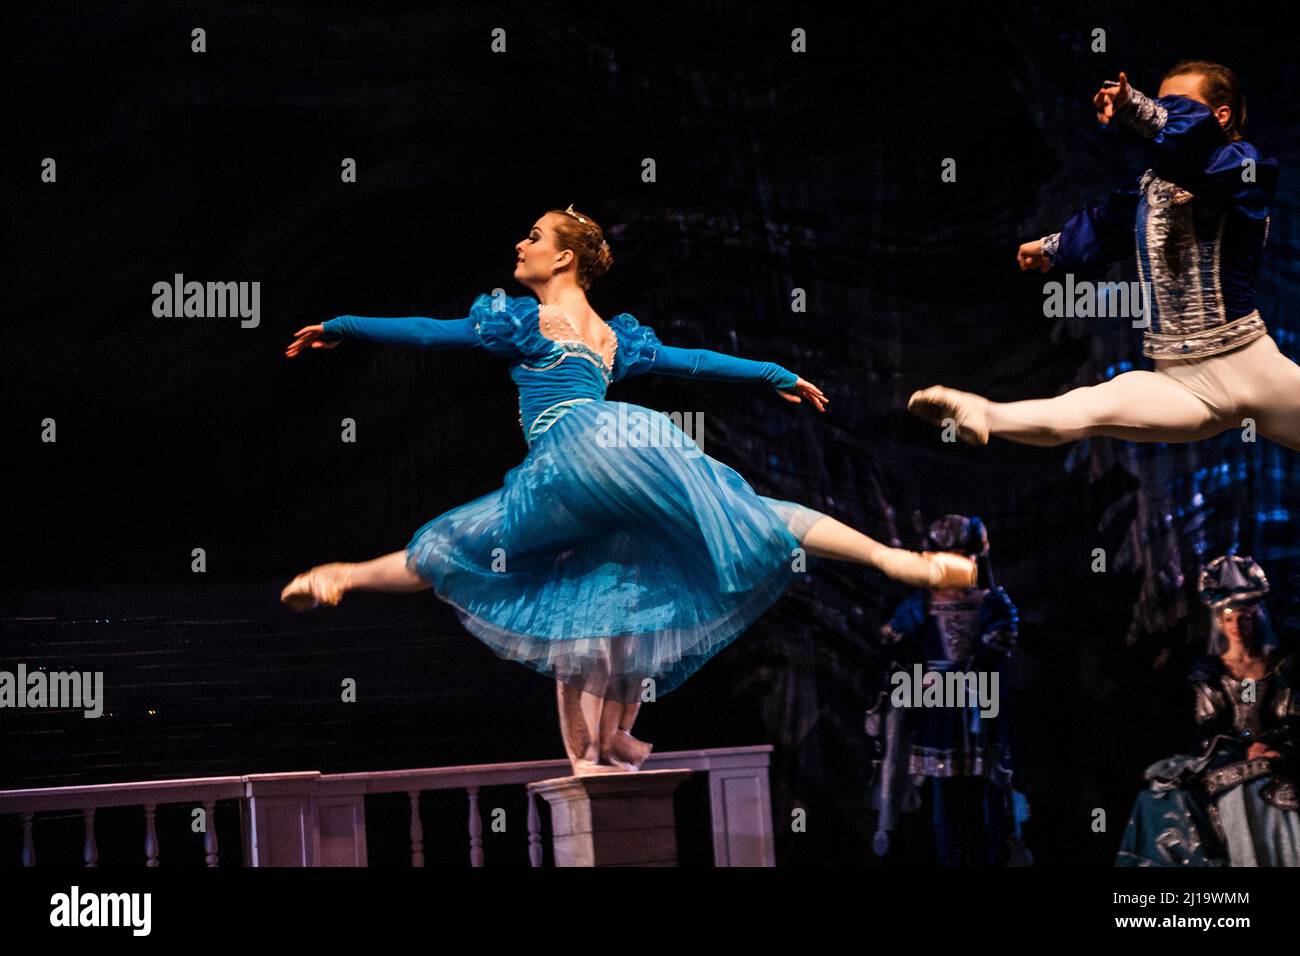 Danseurs de ballet lors de la représentation du lac des cygnes de Tchaïkovski à Saint-Pétersbourg, en Russie, en Europe de l'est Banque D'Images